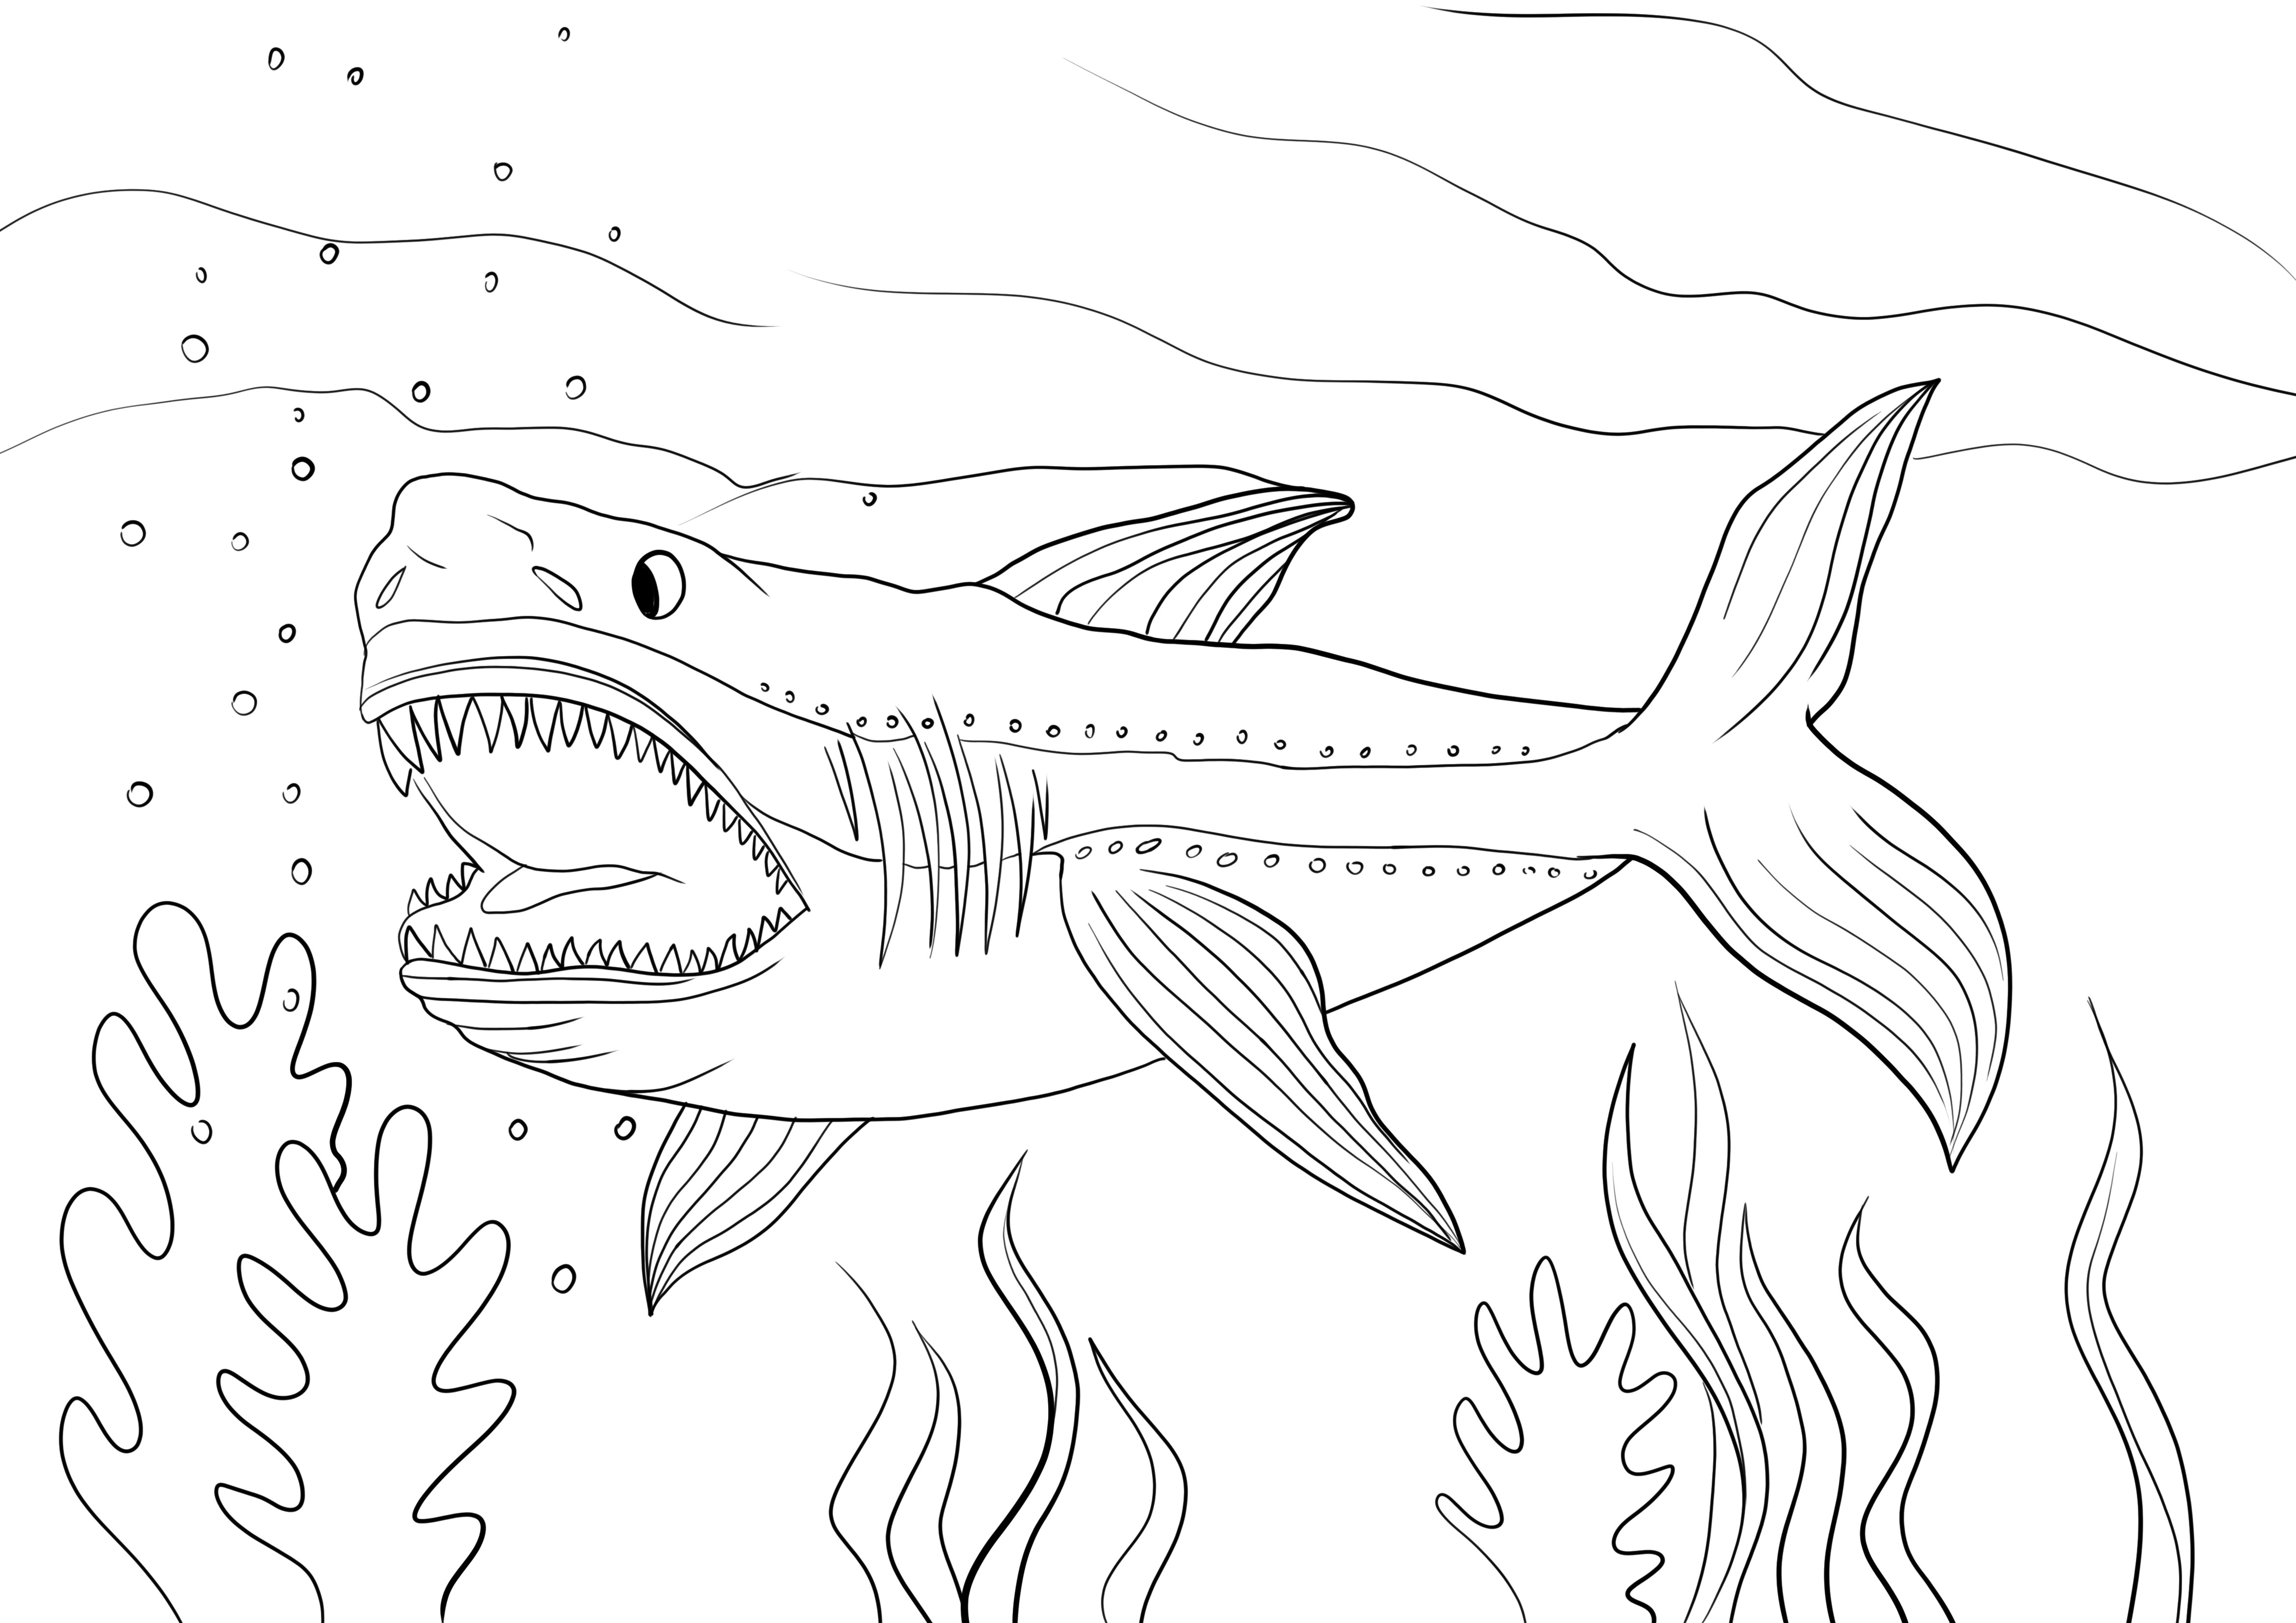 Requin mégalodon à imprimer et colorier ou télécharger gratuitement